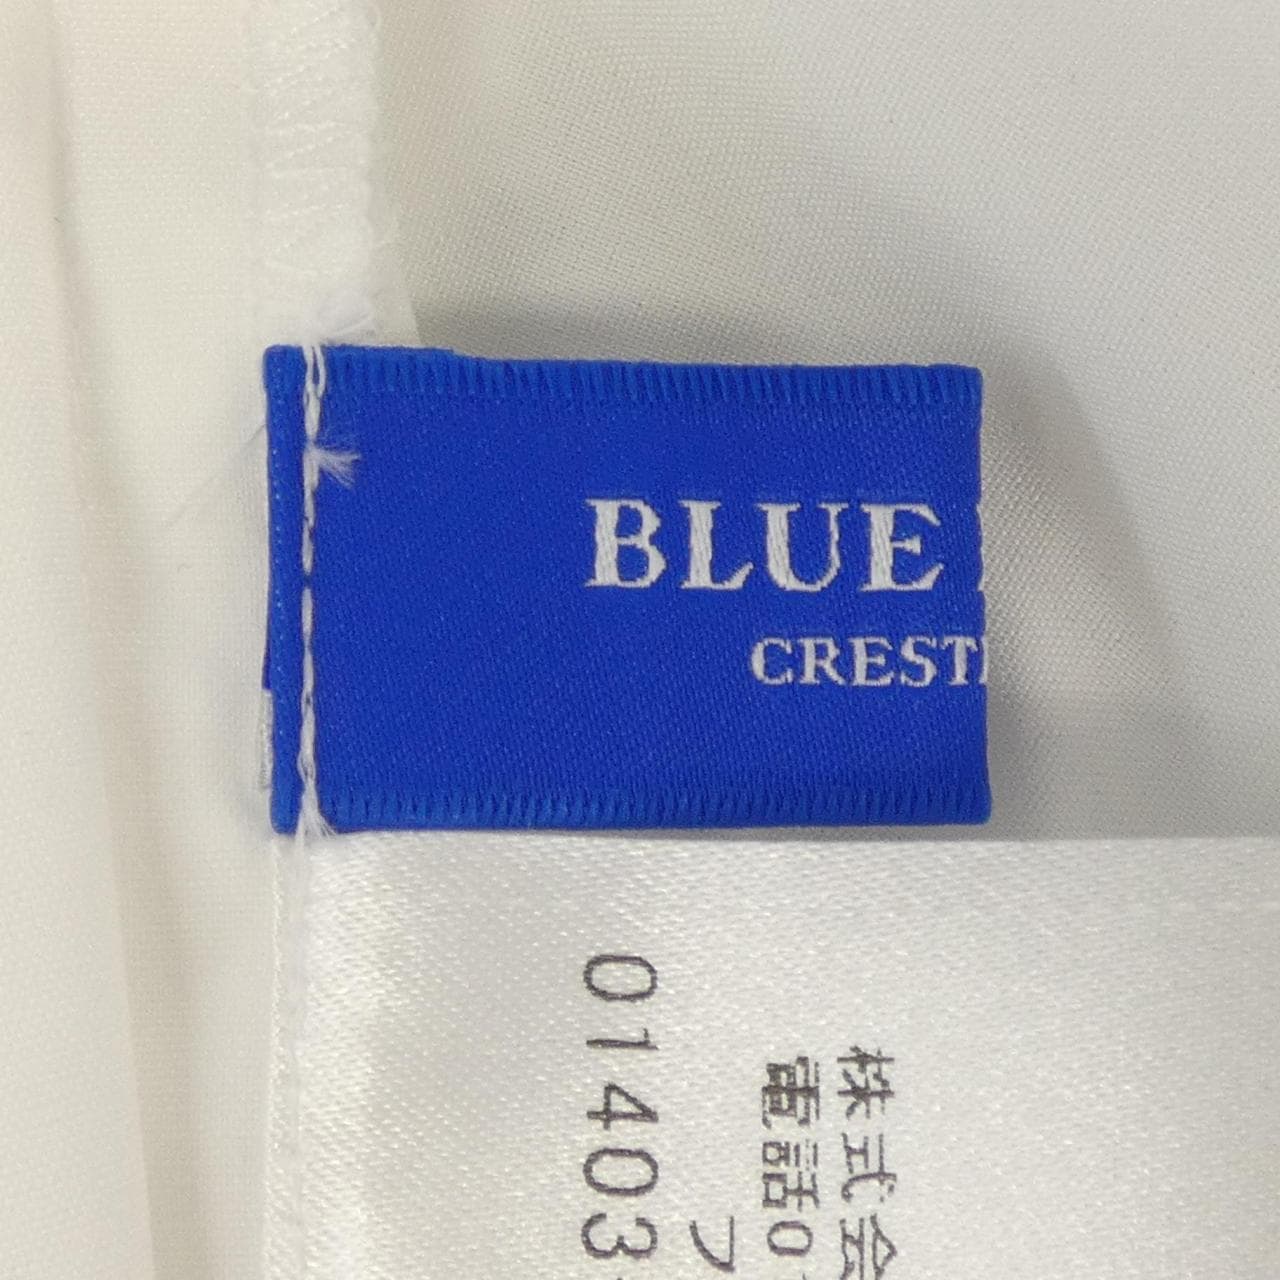 蓝色蕾丝吊带BLUE LABEL CRESTBRID衬衫